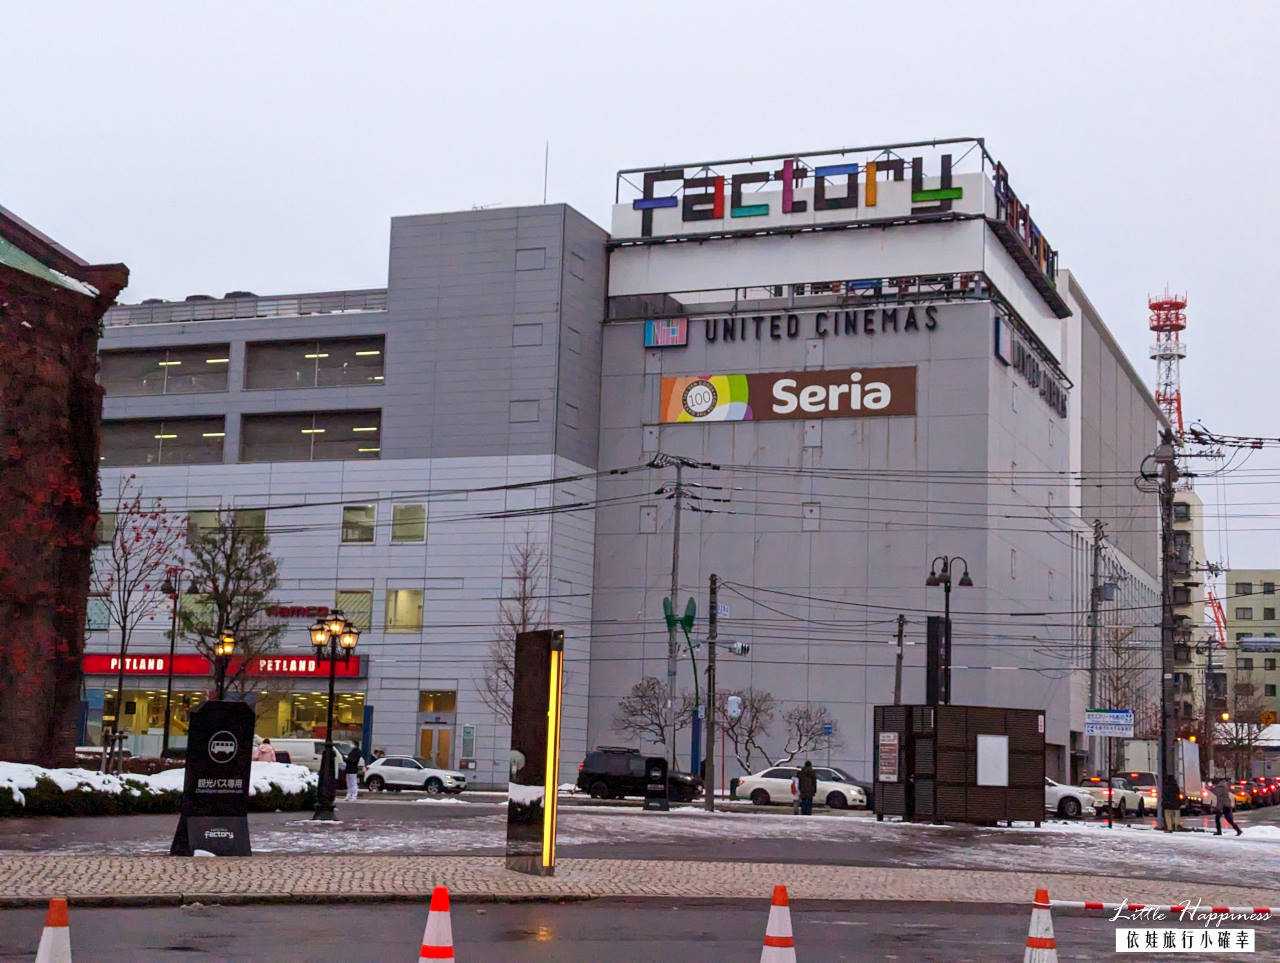 札幌啤酒工廠購物中心Sapporo Factory，20尺巨大聖誕樹點燈音樂秀超華麗，從釀啤酒變成160間店鋪的購物中心